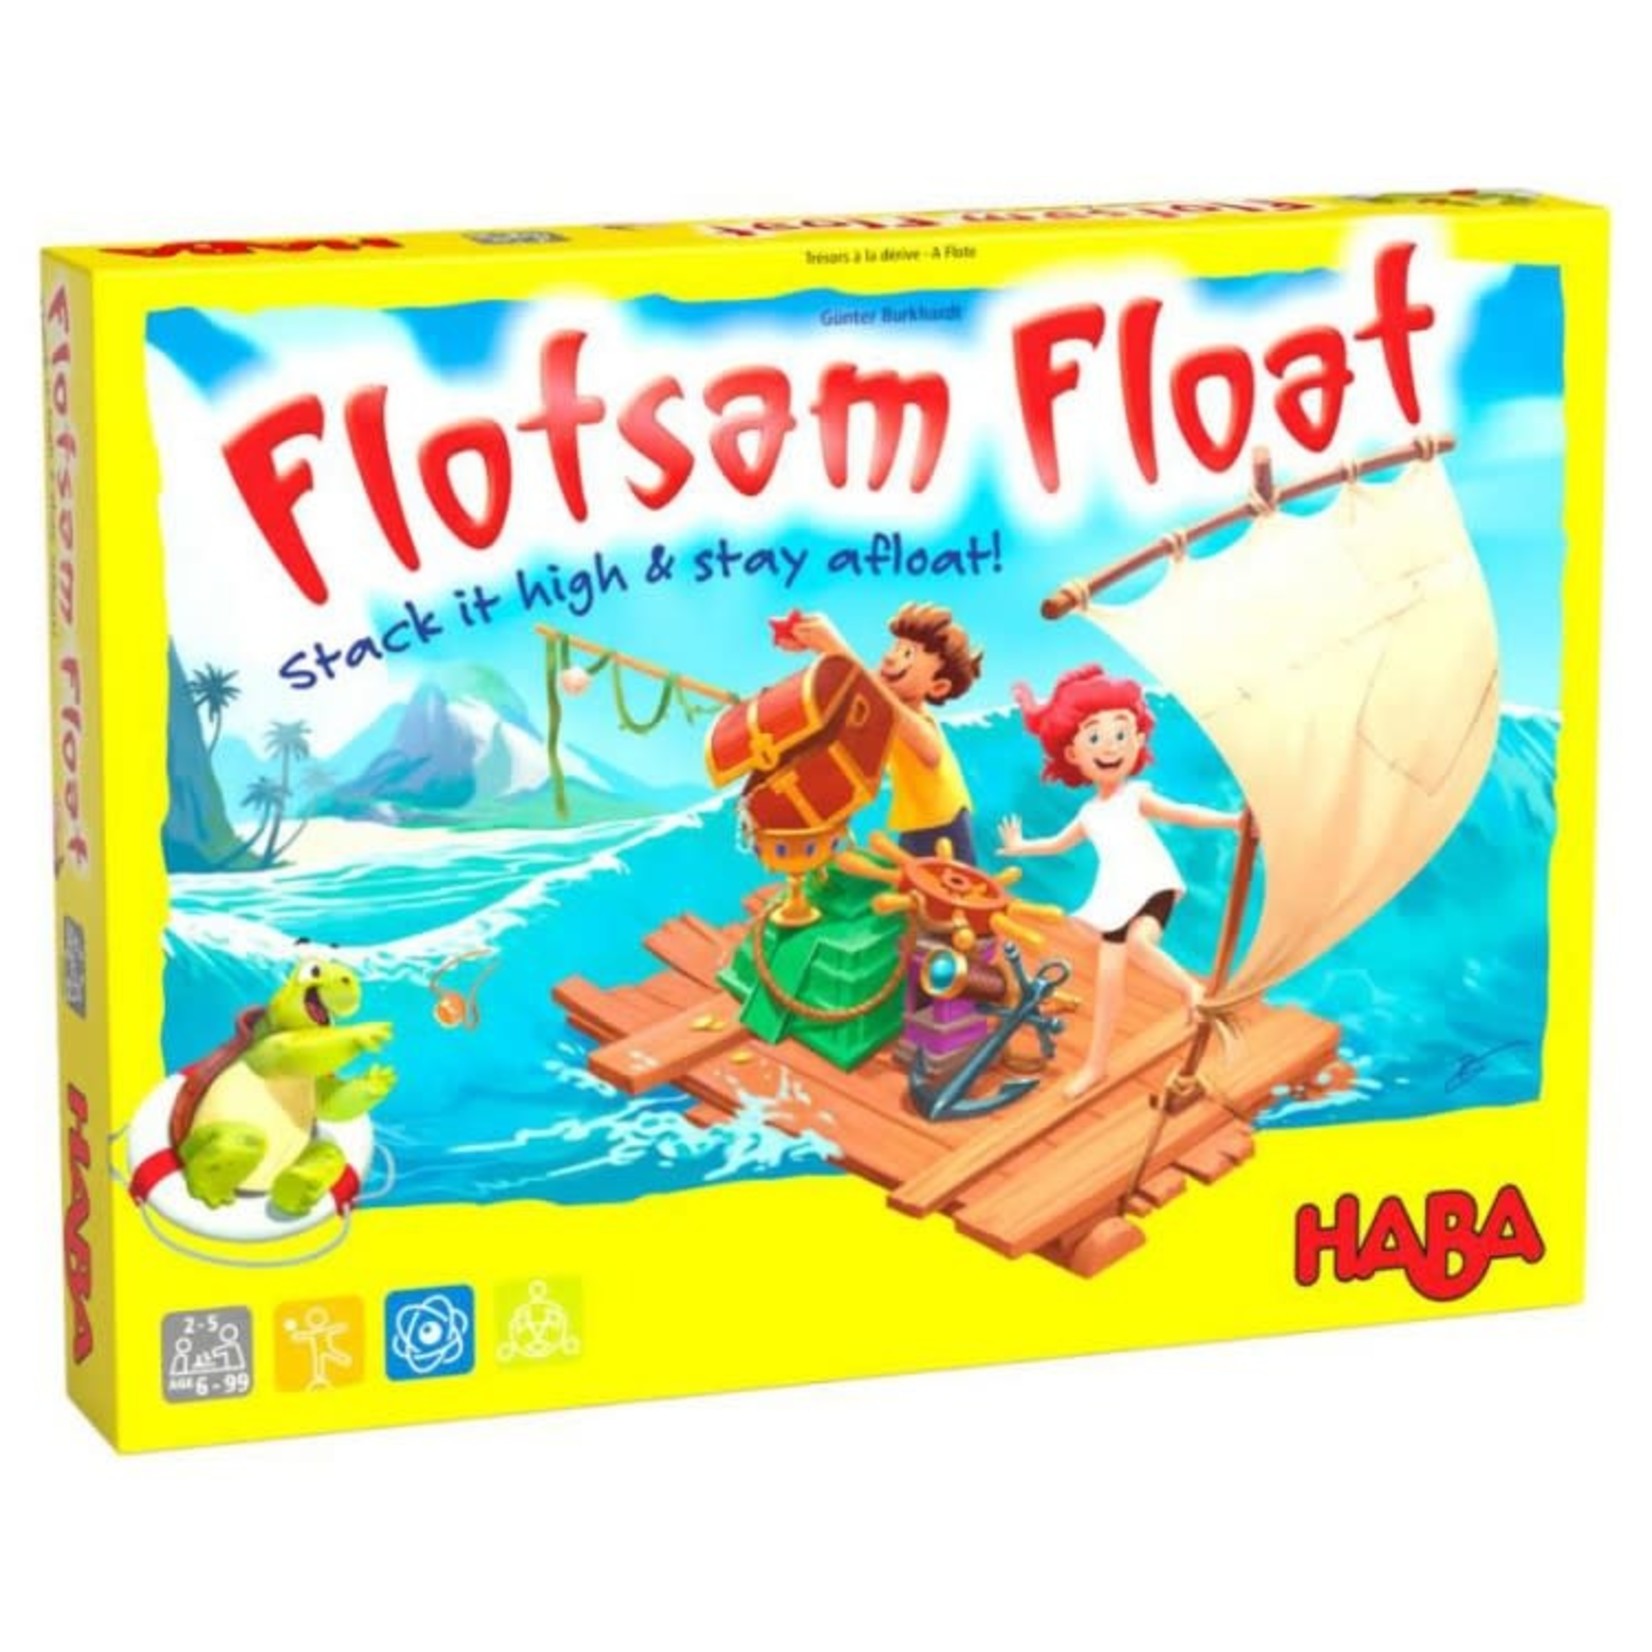 HABA HABA Flotsam Float